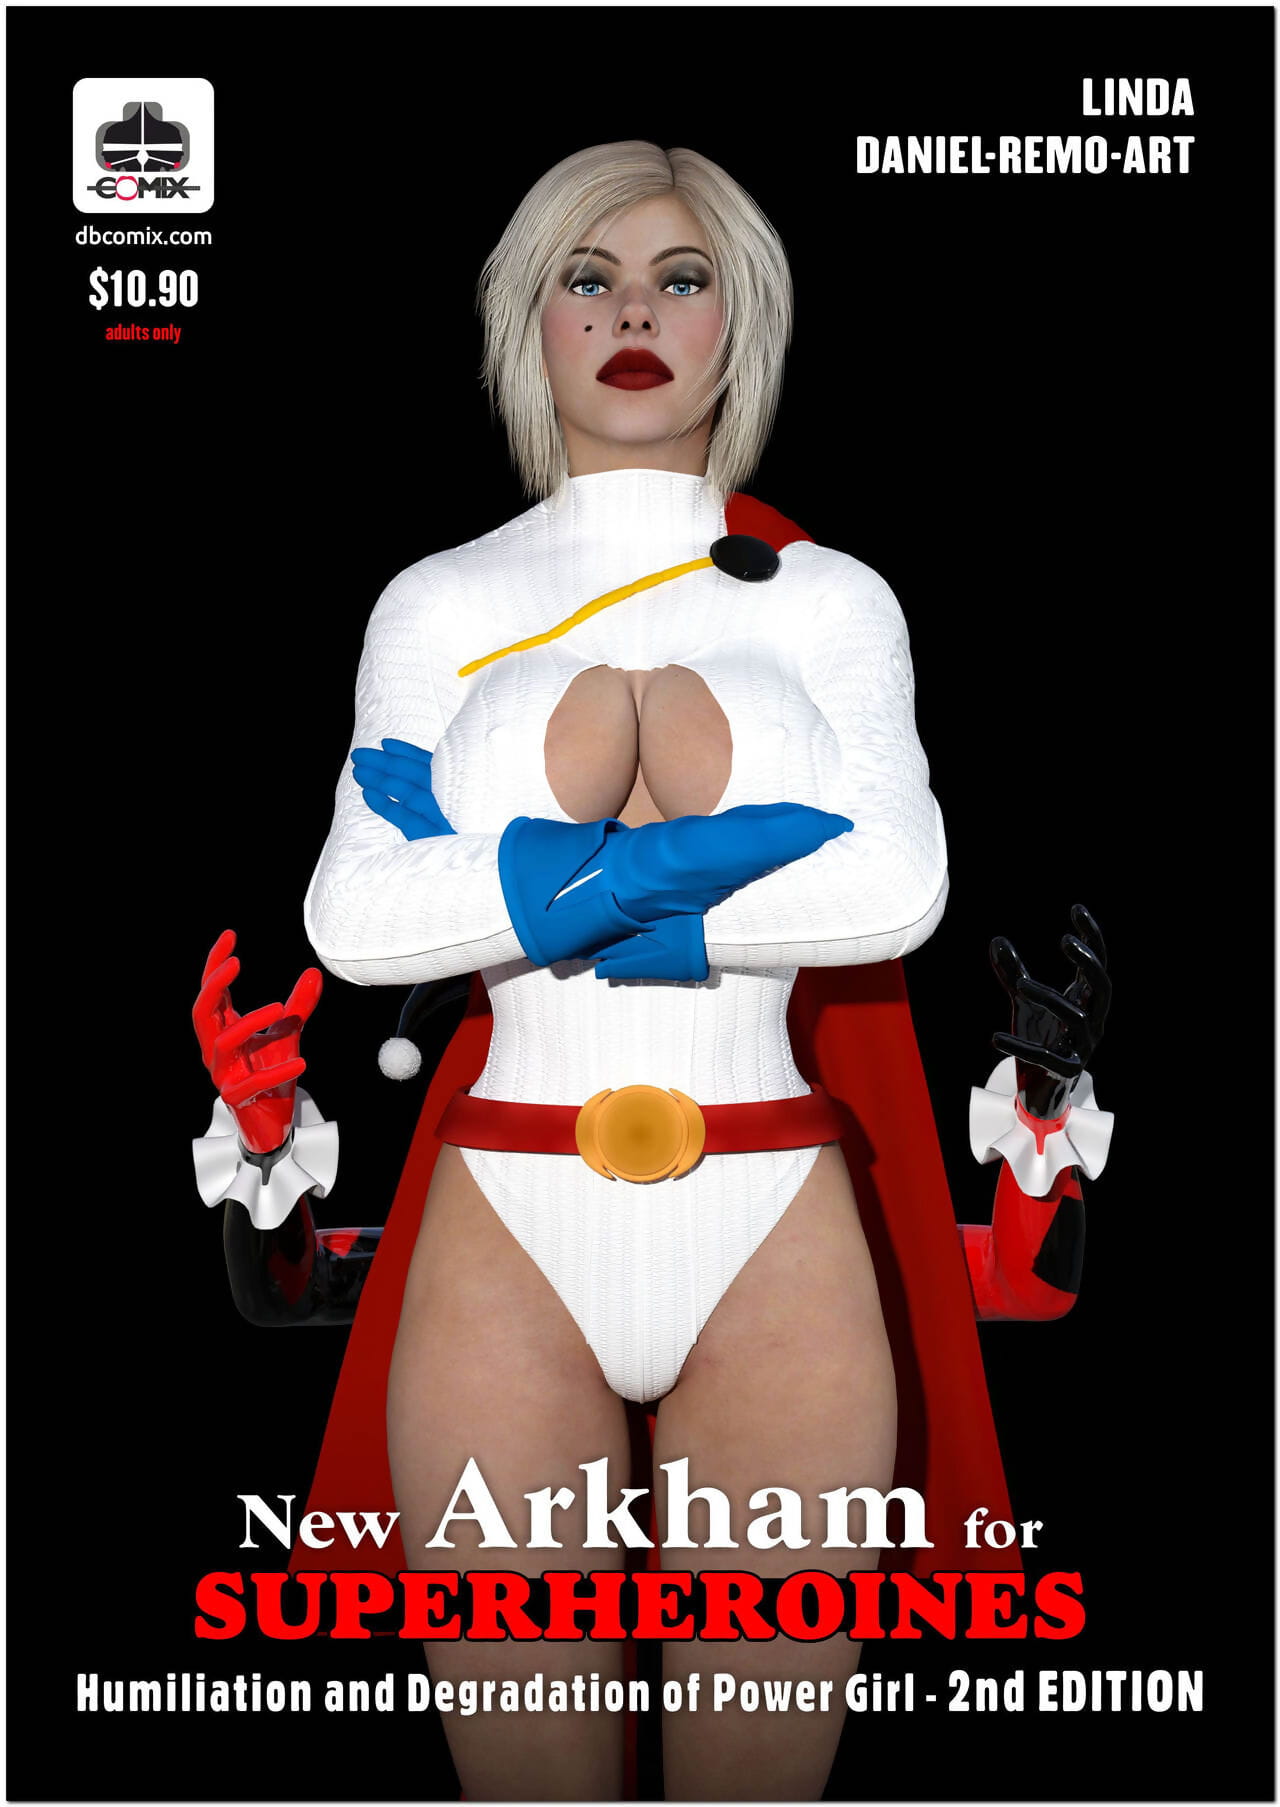 новый аркхэм для супергероинь 1 НД издание - Унижение и деградация из мощность девушка page 1